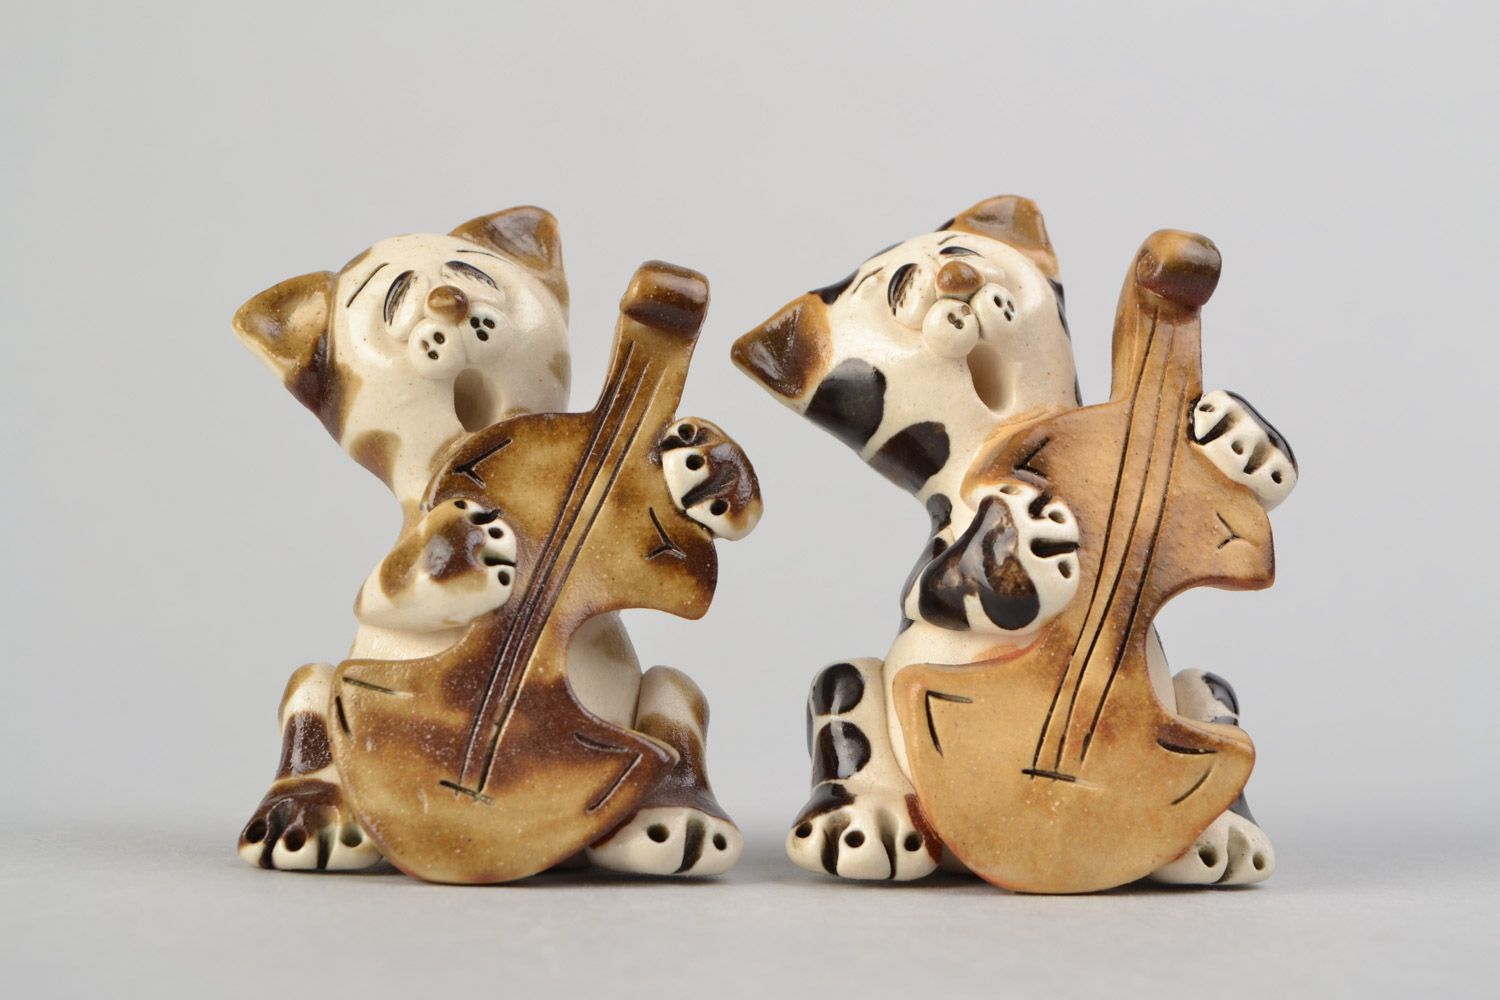 Handmade cute ceramic figurines 2 pieces funny cats for interior decor photo 4